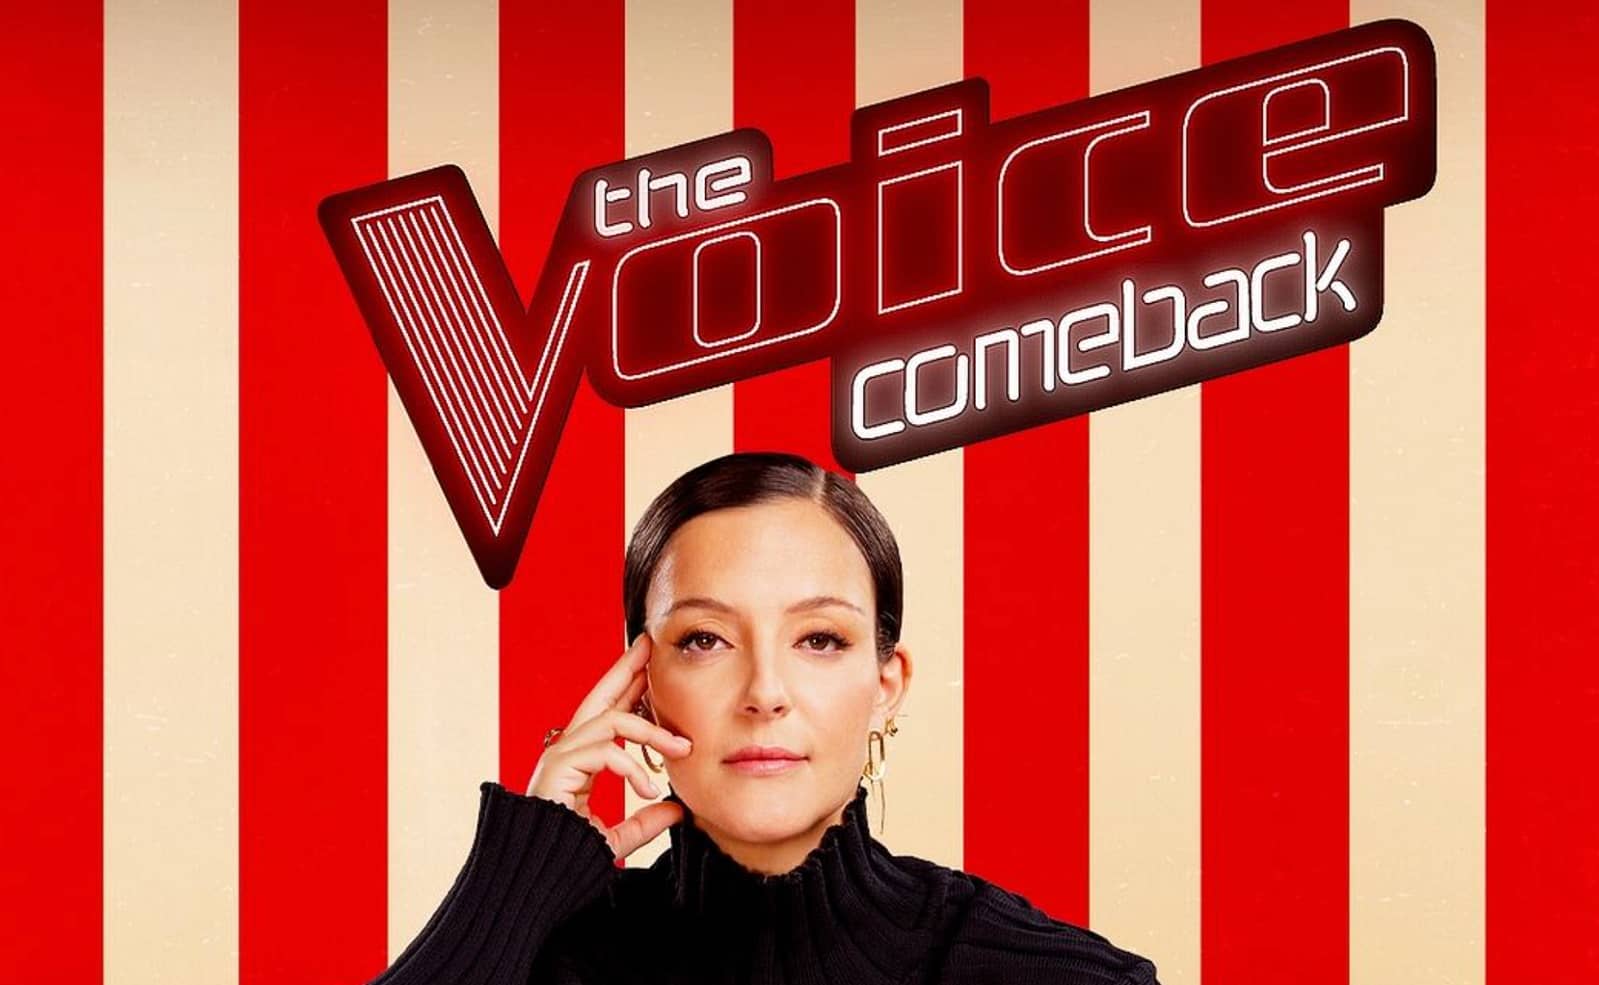 Camille Lellouche a reçu des messages de haine sur les réseaux pour son arrivée dans "The Voice"